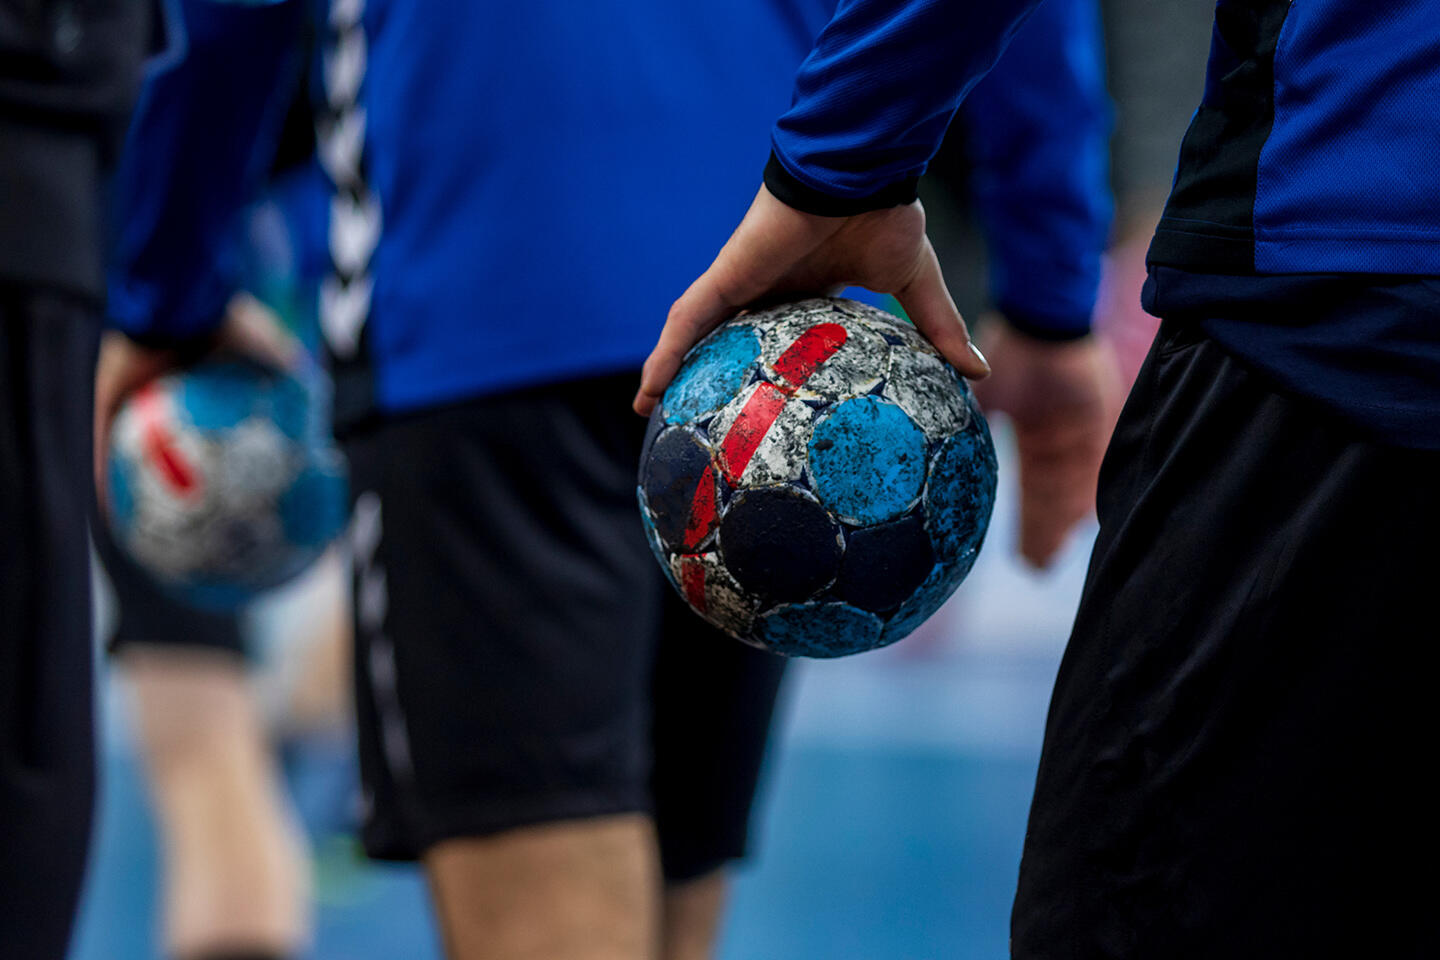 Jugadores de balonmano en acción sosteniendo balones de balonmano desgastados con colores descascarados, simbolizando la intensidad y la pasión del deporte, una actividad cautivadora para los huéspedes alojados en apartoteles cerca del Estadio Pierre-Mauroy en Lille.